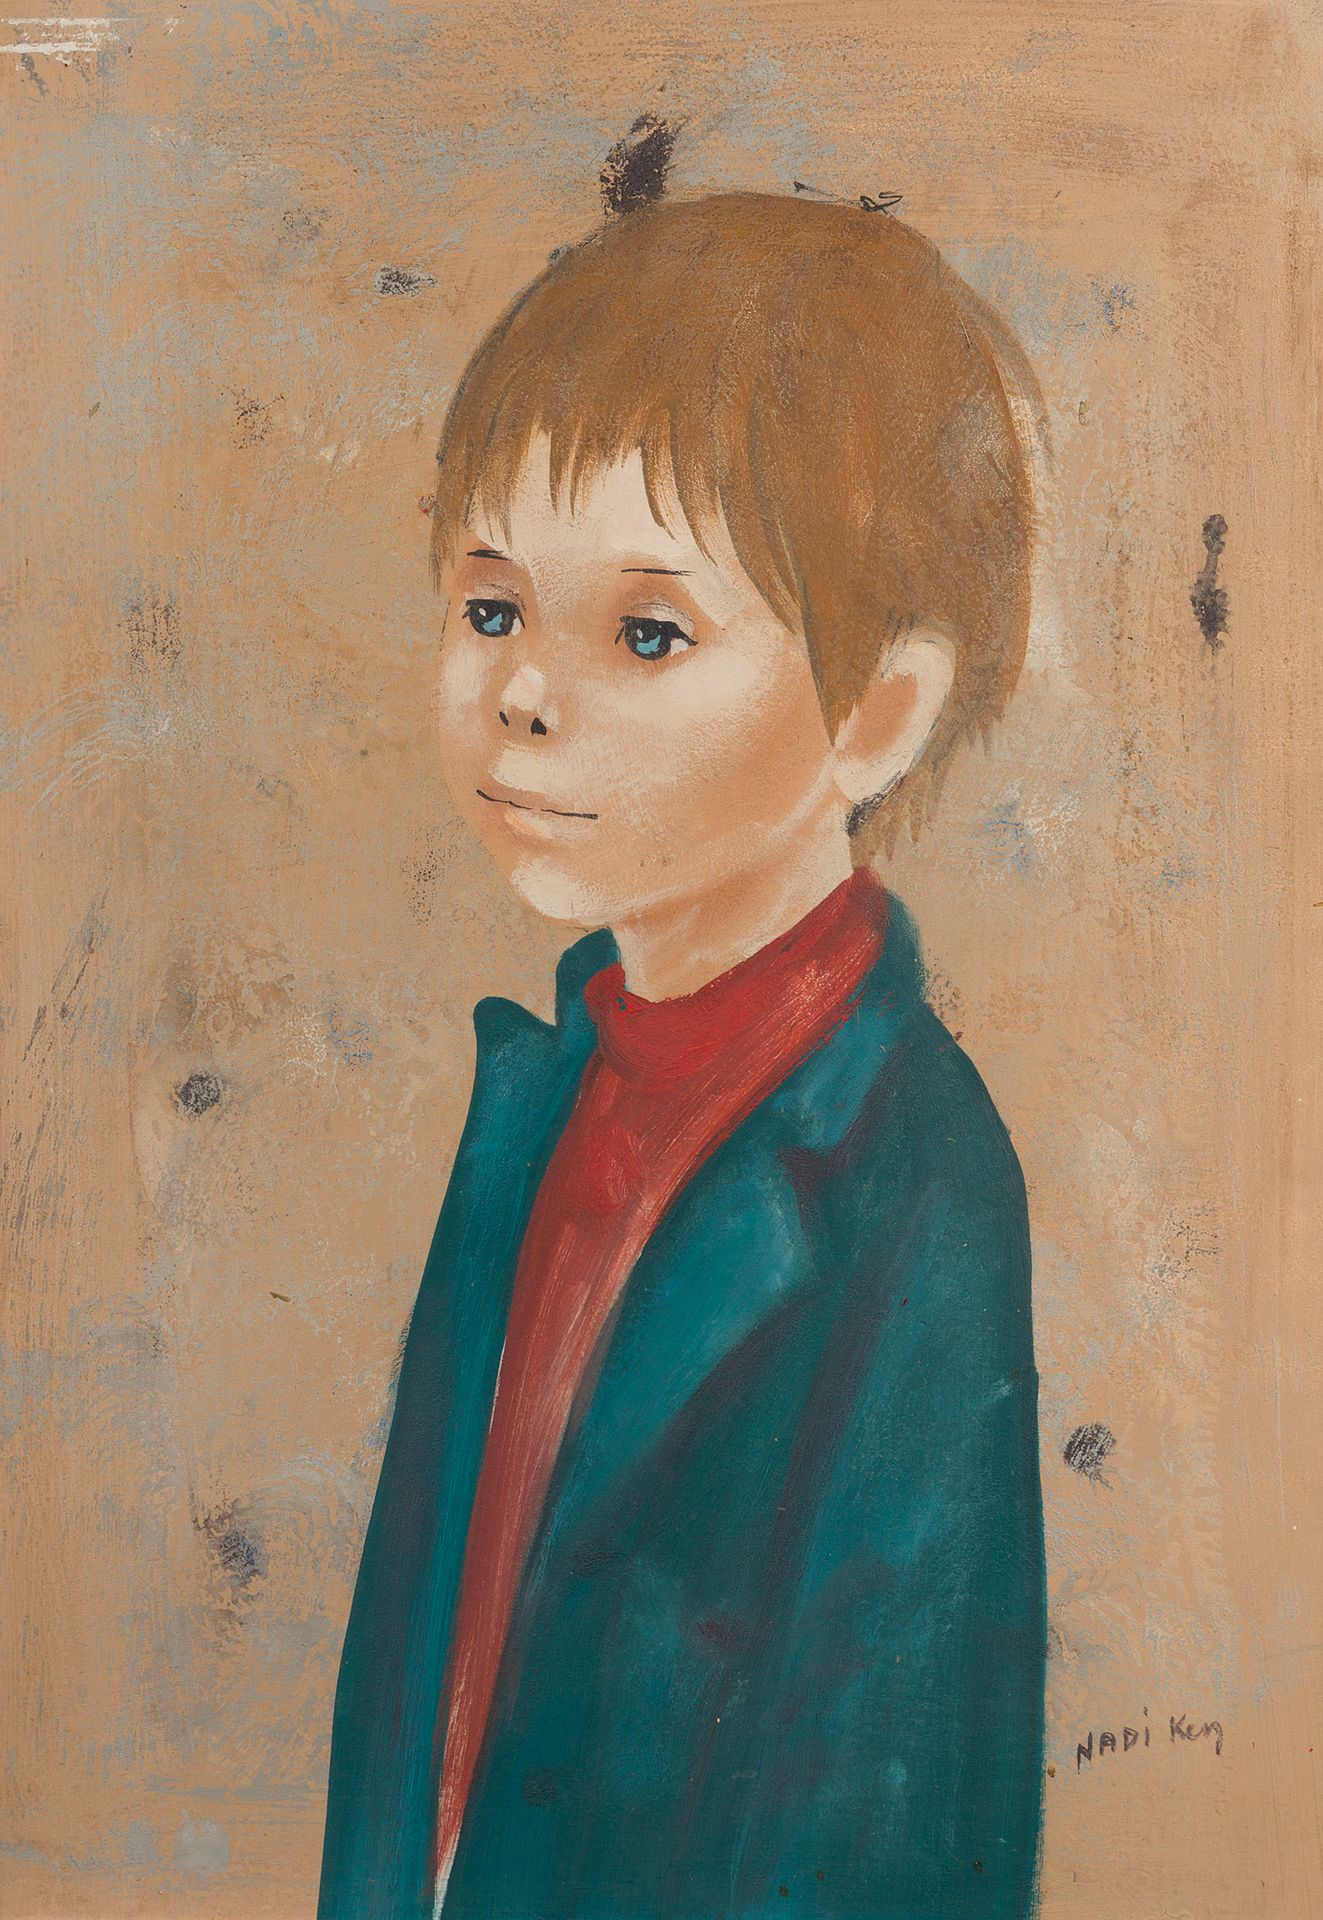 Null Nadi KEN (nacido en 1934)

Retrato de un niño

Óleo sobre tabla firmado

52&hellip;